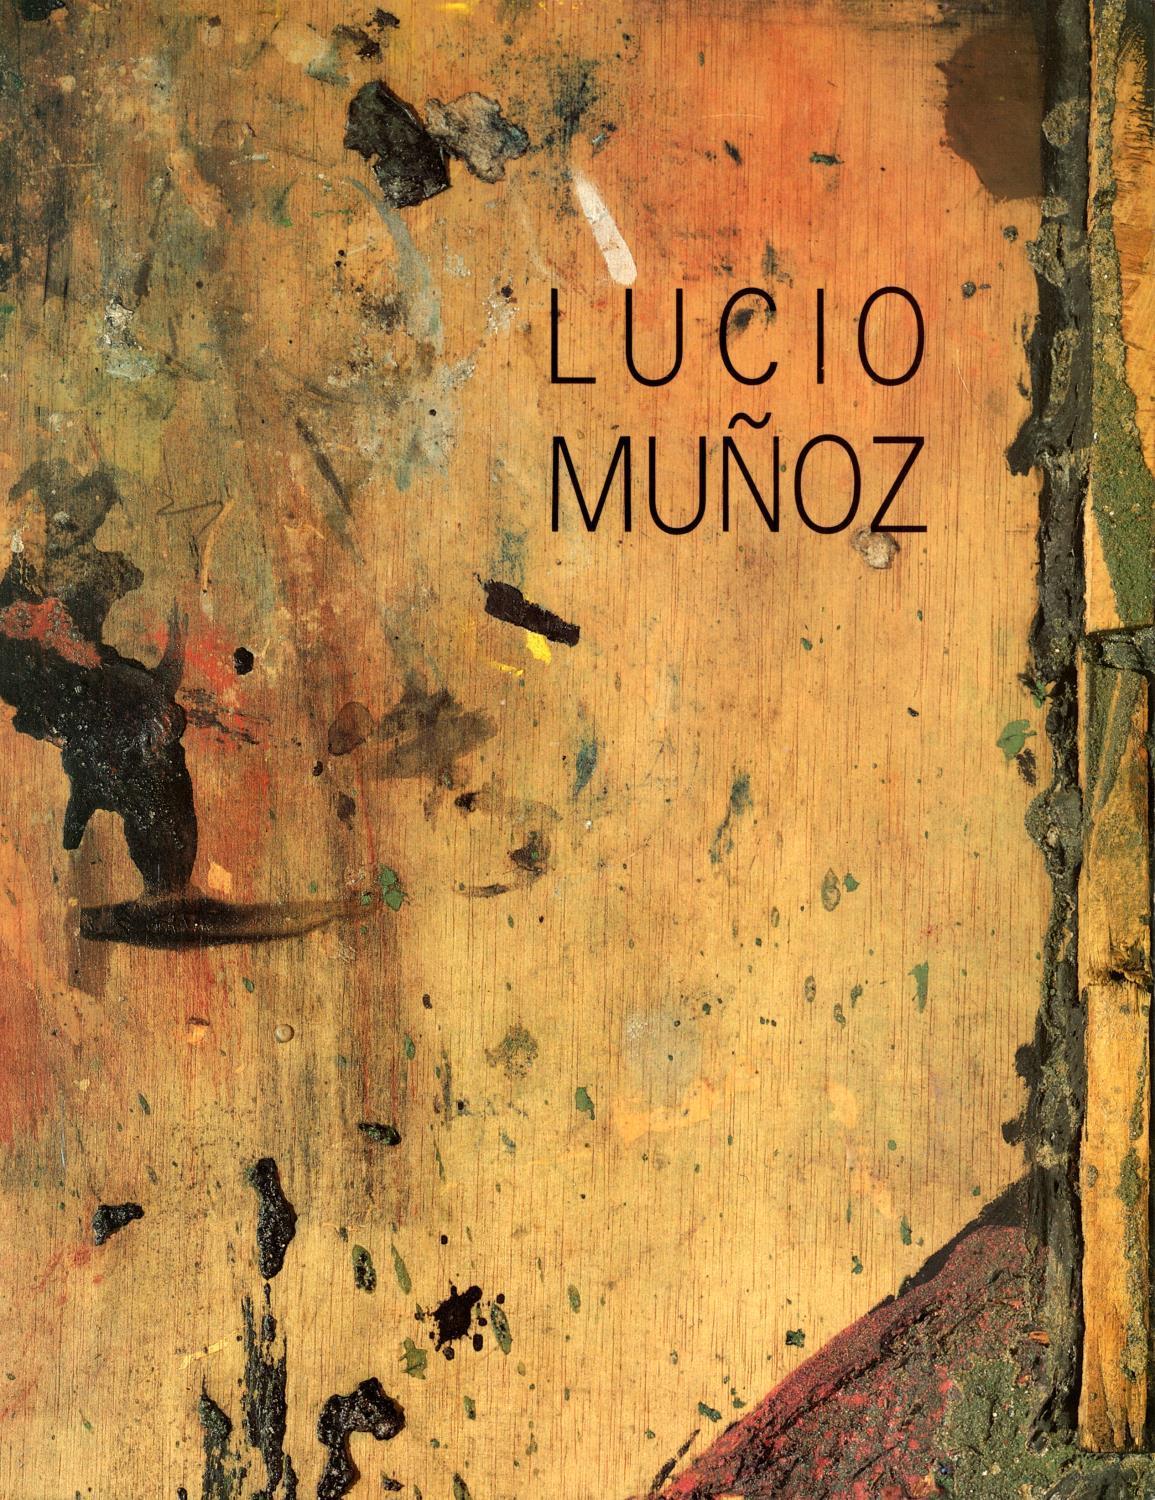 Lucio Muñoz